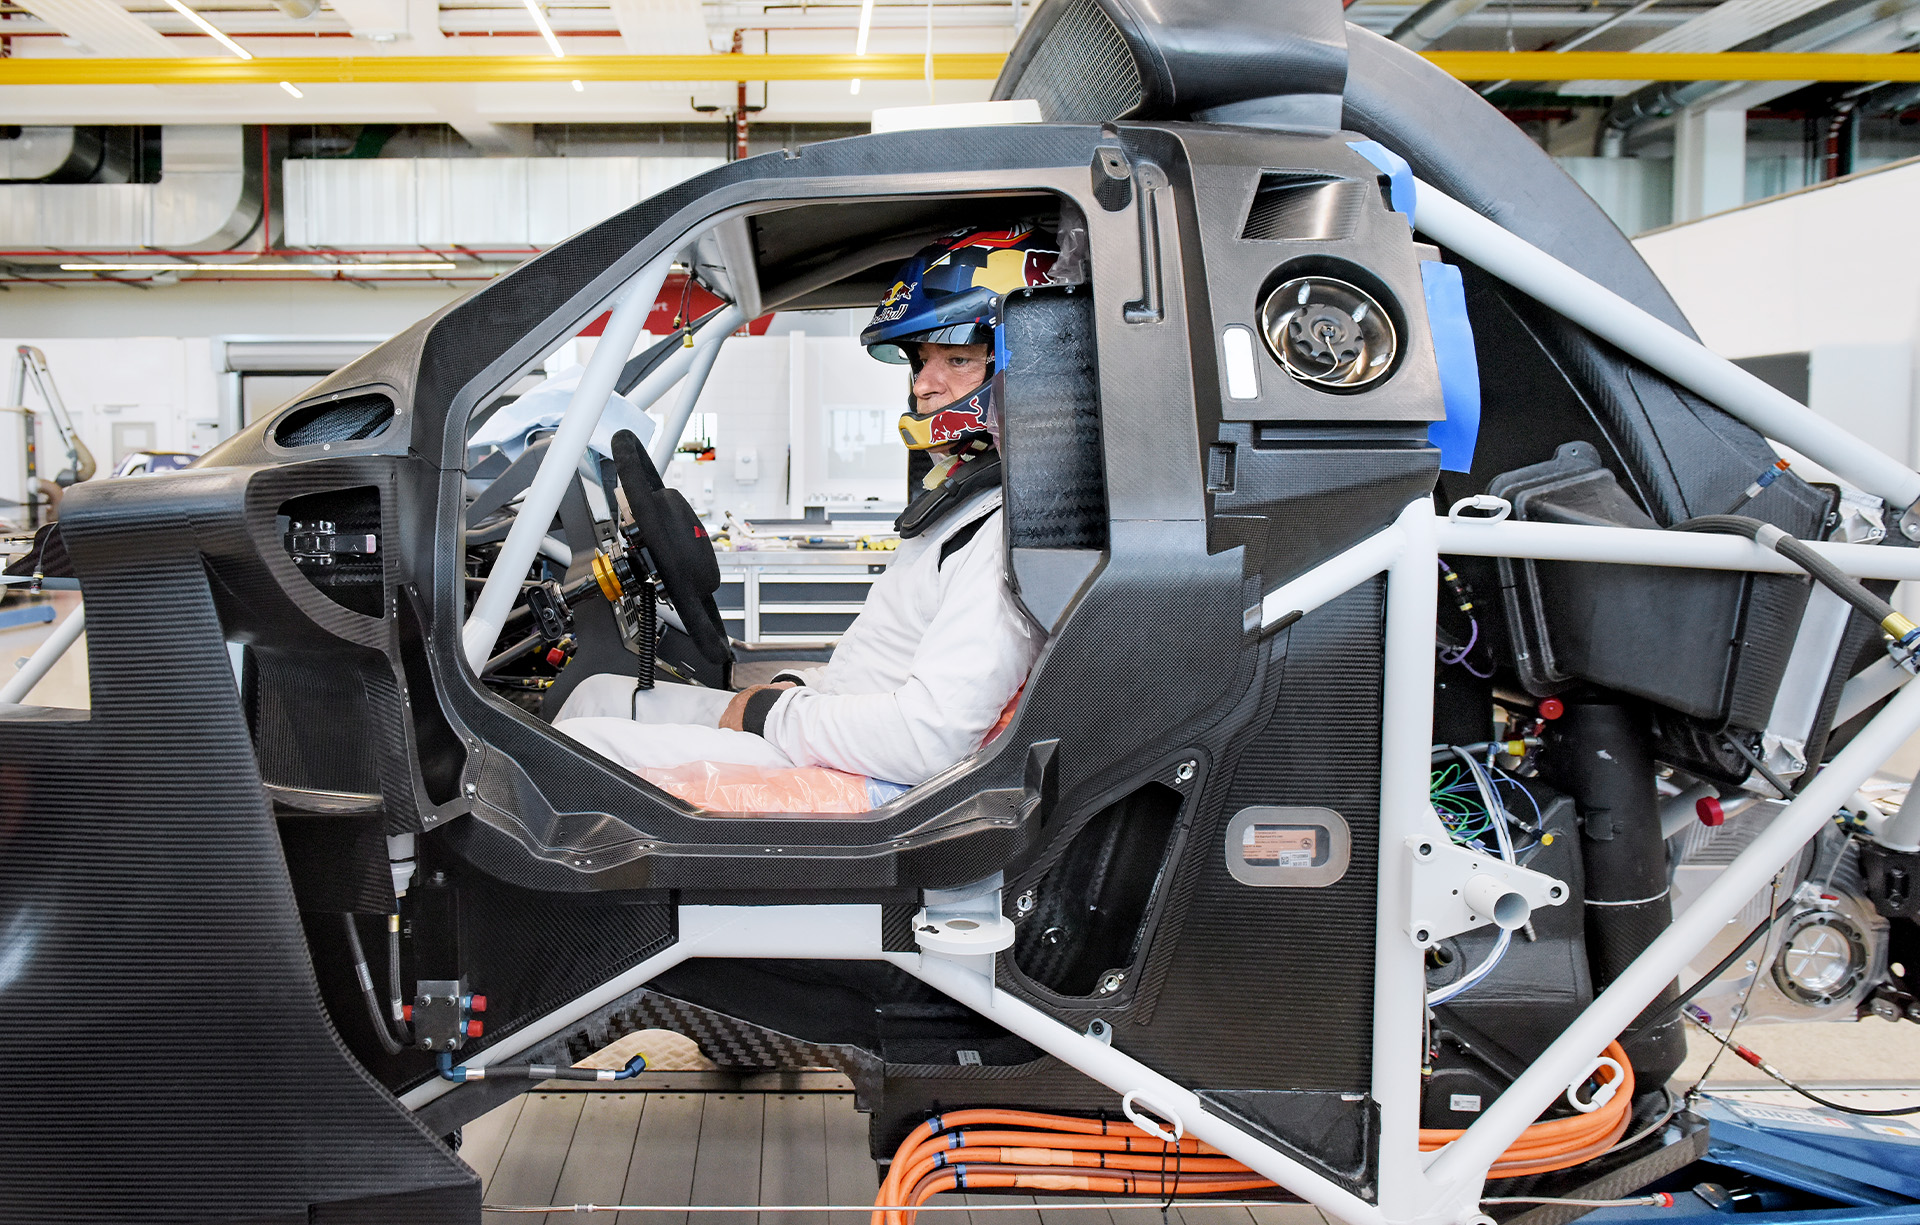  Carlos Sainz, jeden z kierowców Rajdu Dakar należący do Audi Sport, w klatce samochodu rajdowego przy montażu siedzenia. Siedzi za kierownicą na pomarańczowej piankowej poduszce.